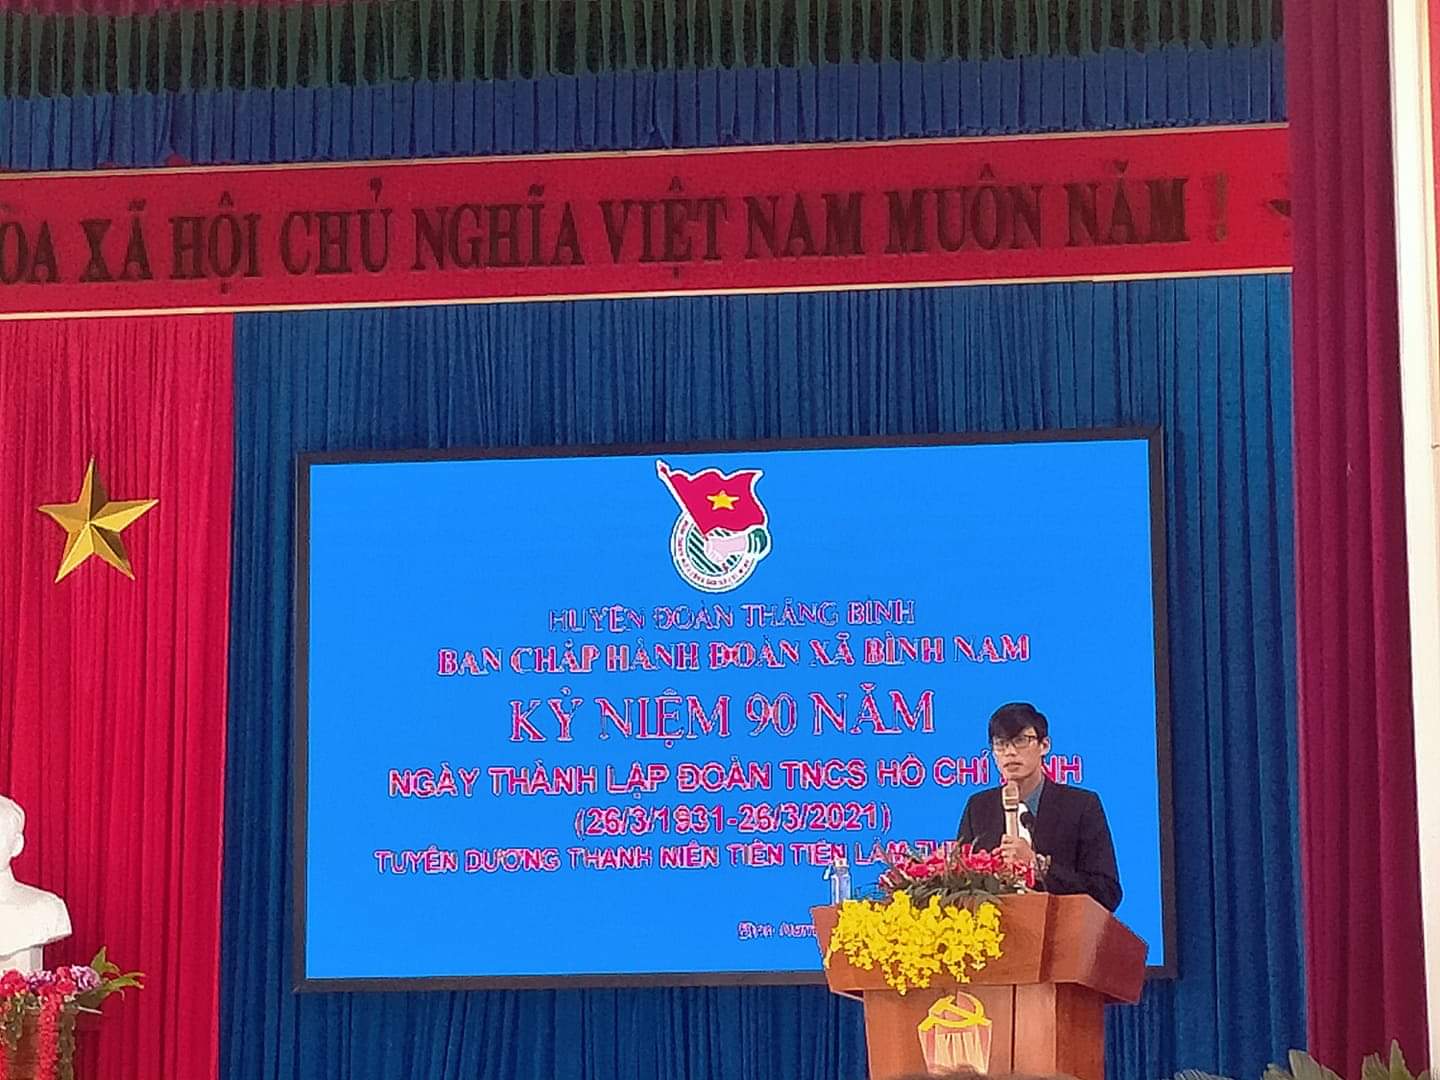 Đoàn xã Bình Nam tổ chức gặp mặt nhân dịp kỷ niệm 90 năm ngày thành lập Đoàn TNCS Hồ Chí Minh (26/03/1931-26/03/2021)